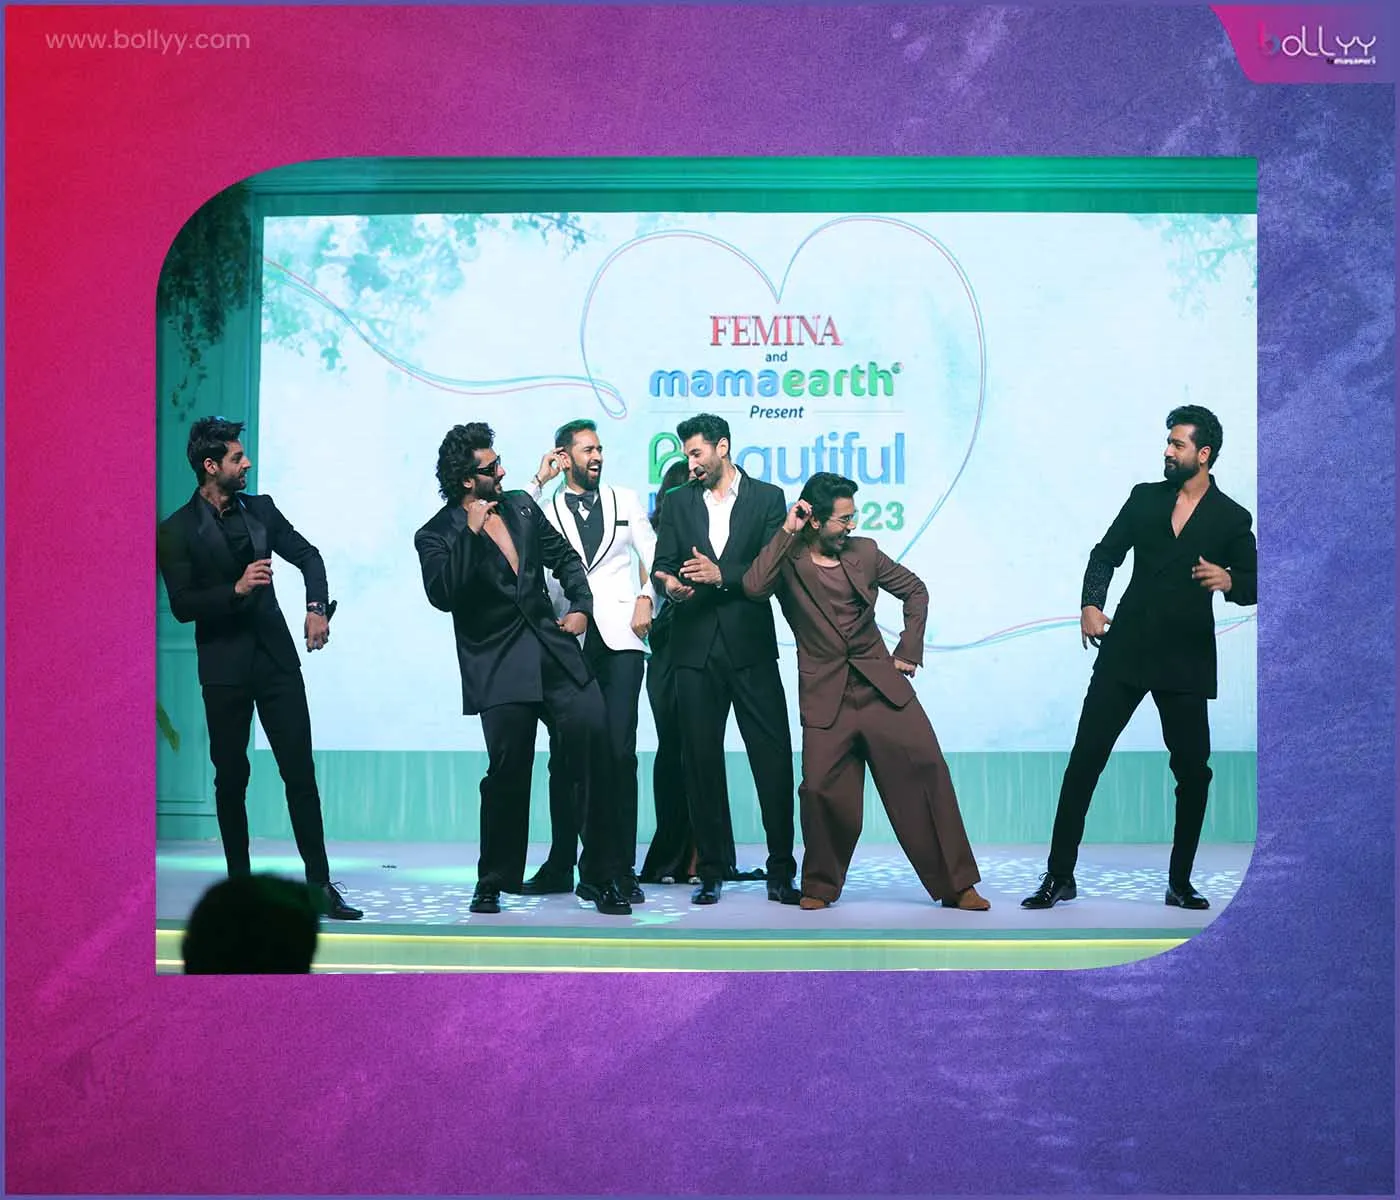 Vicky, Arjun, Aditya and Rajkummar jam on stage with an electric dance performance